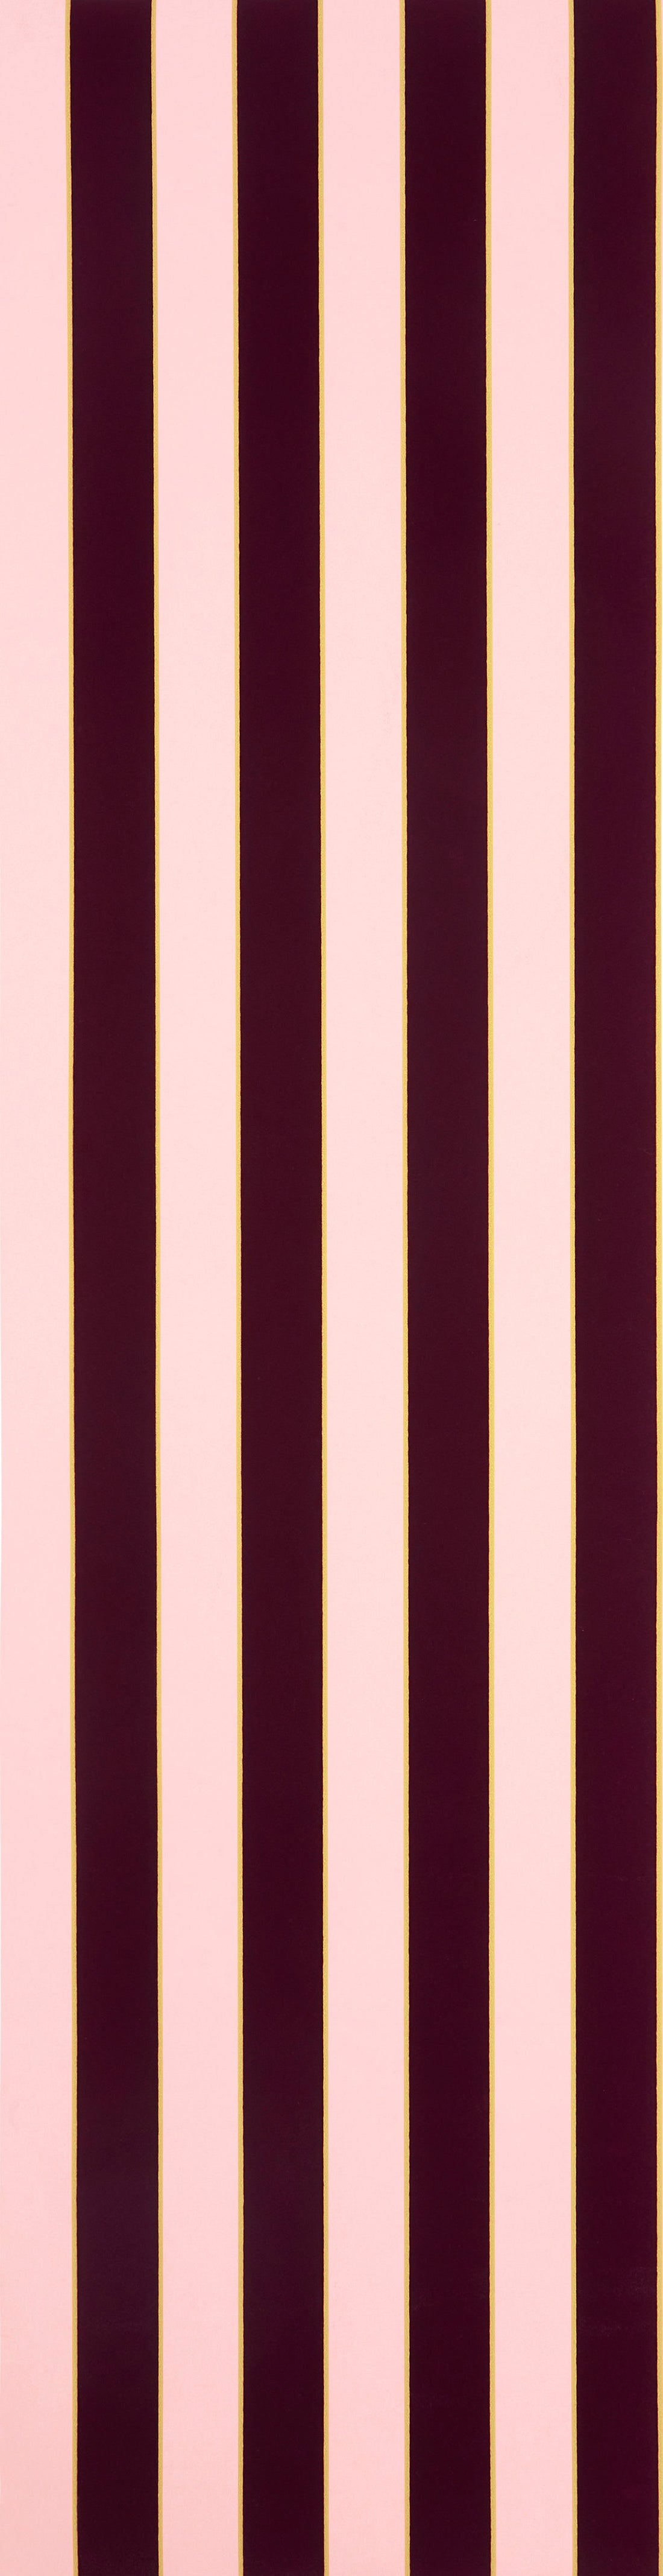 Regency stripe